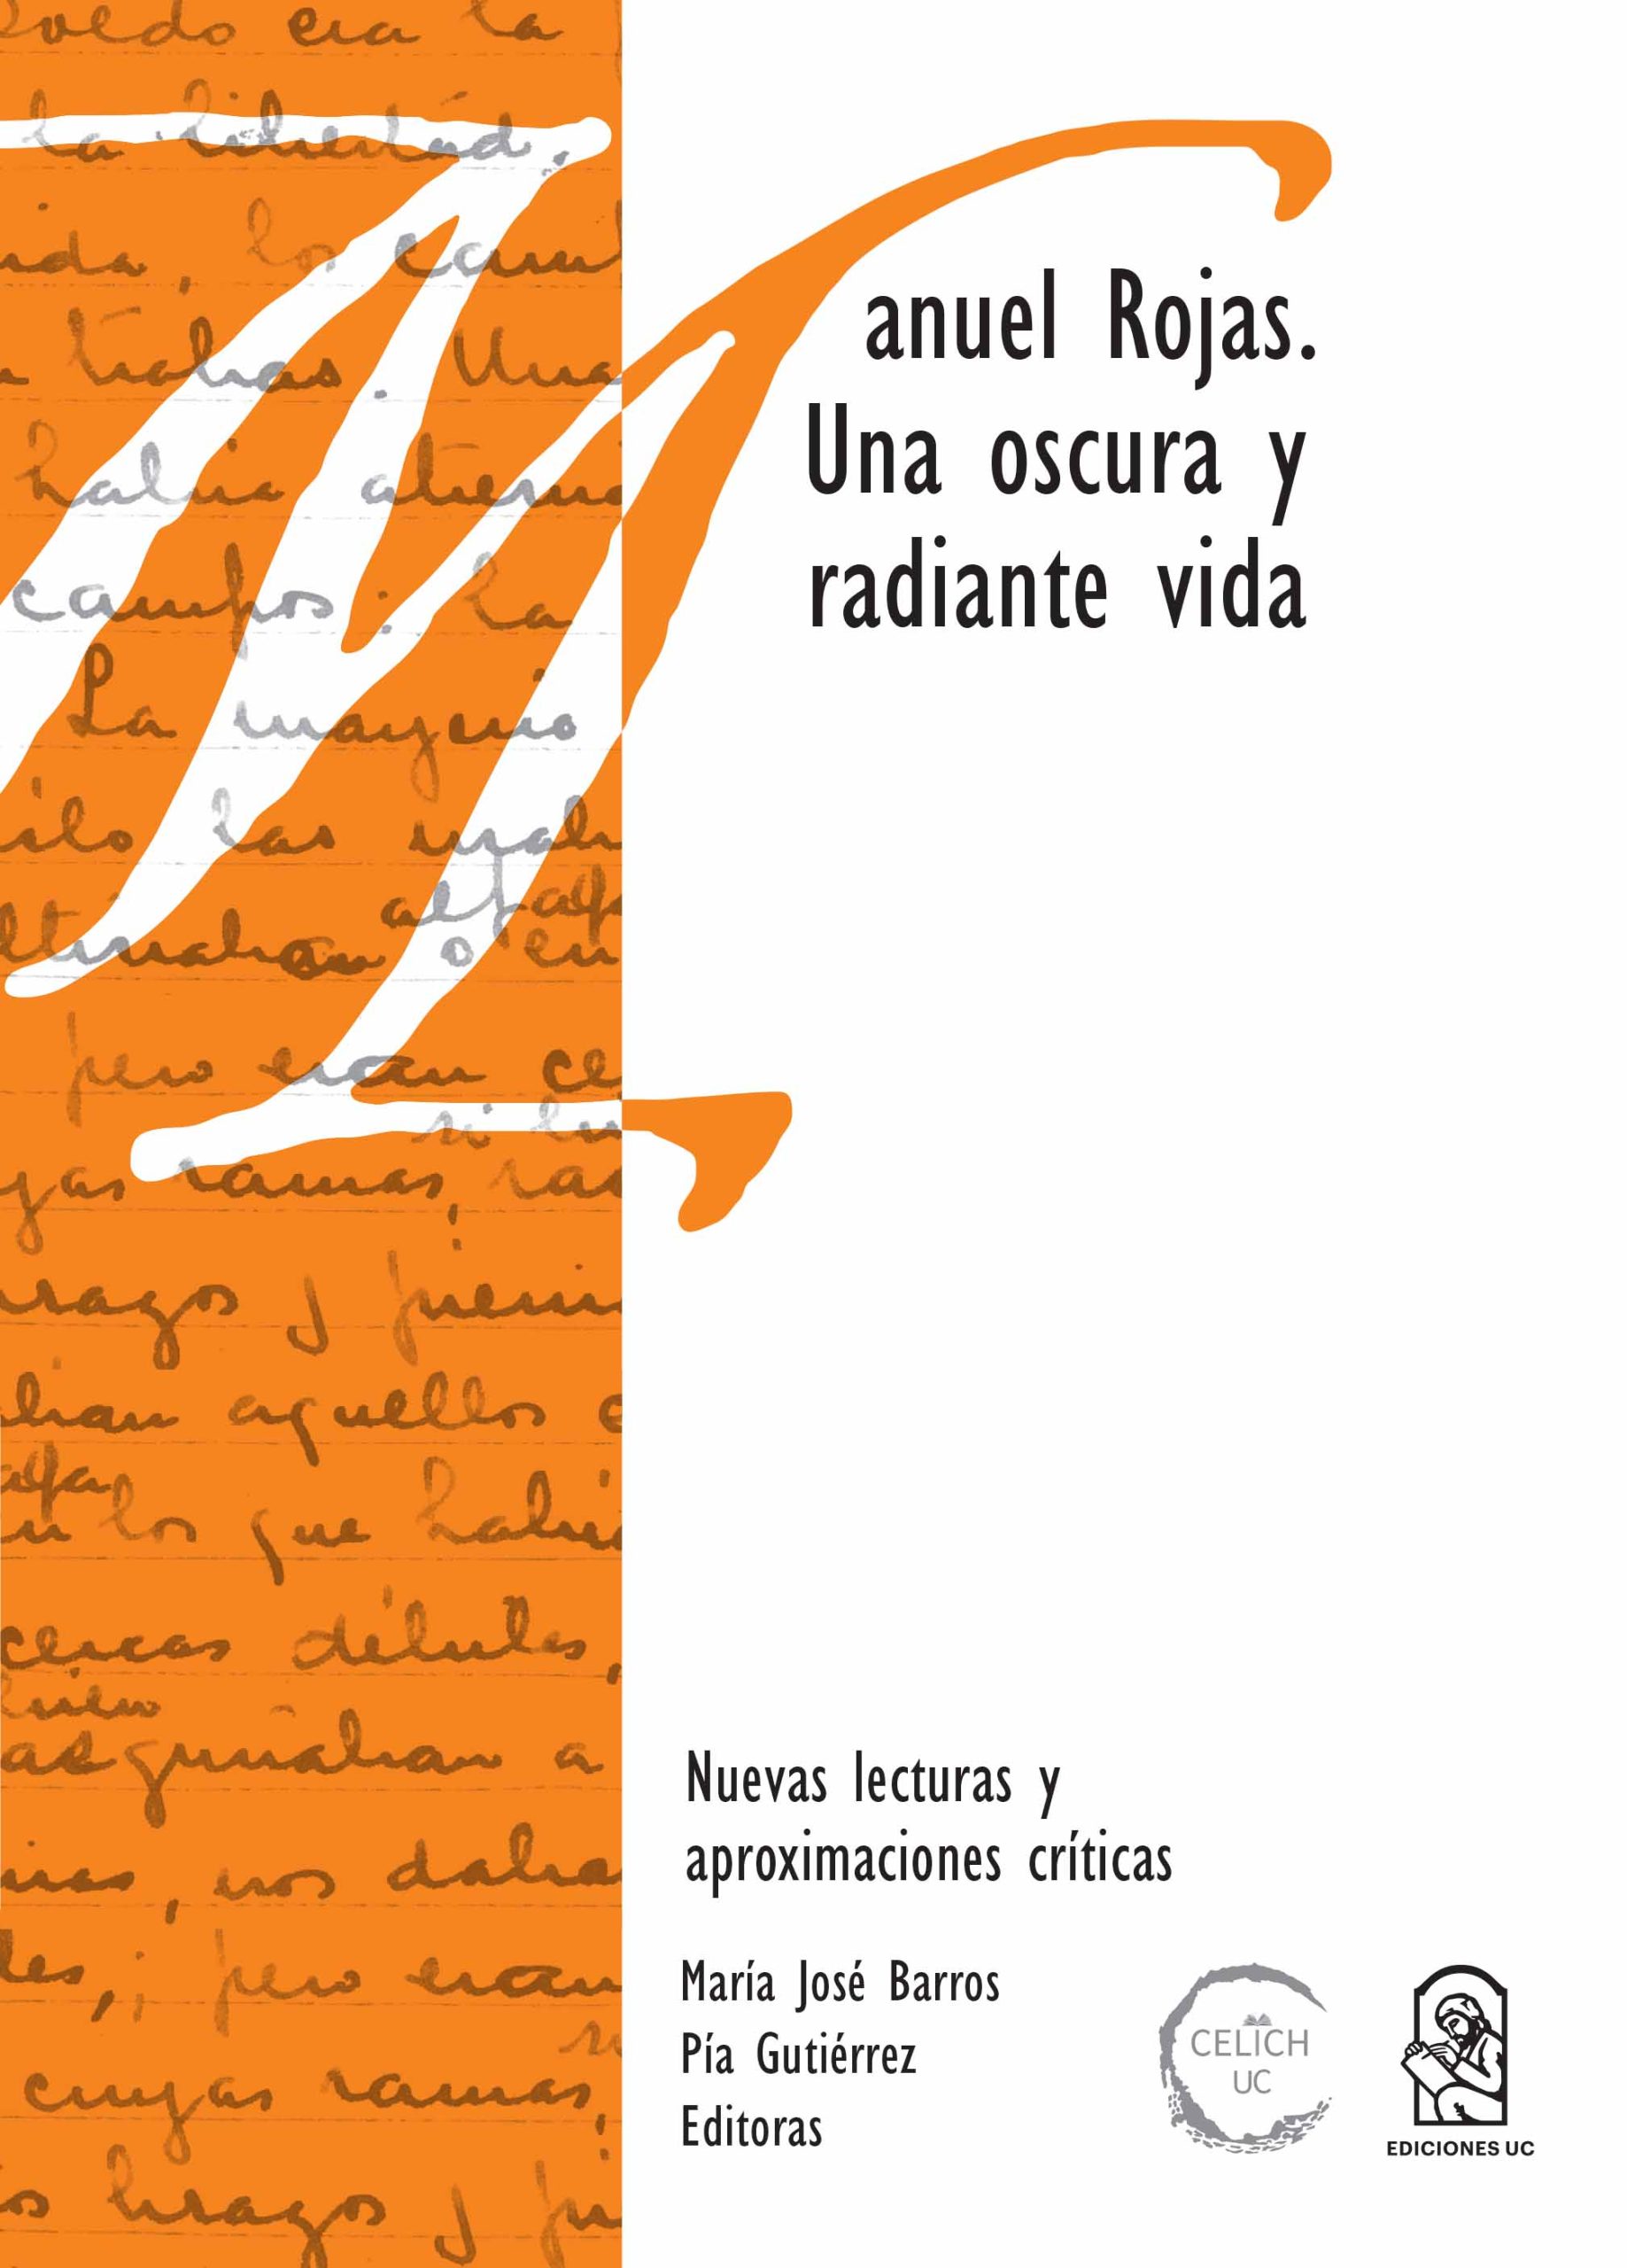 Presentación del libro Manuel Rojas. Una oscura y radiante vida